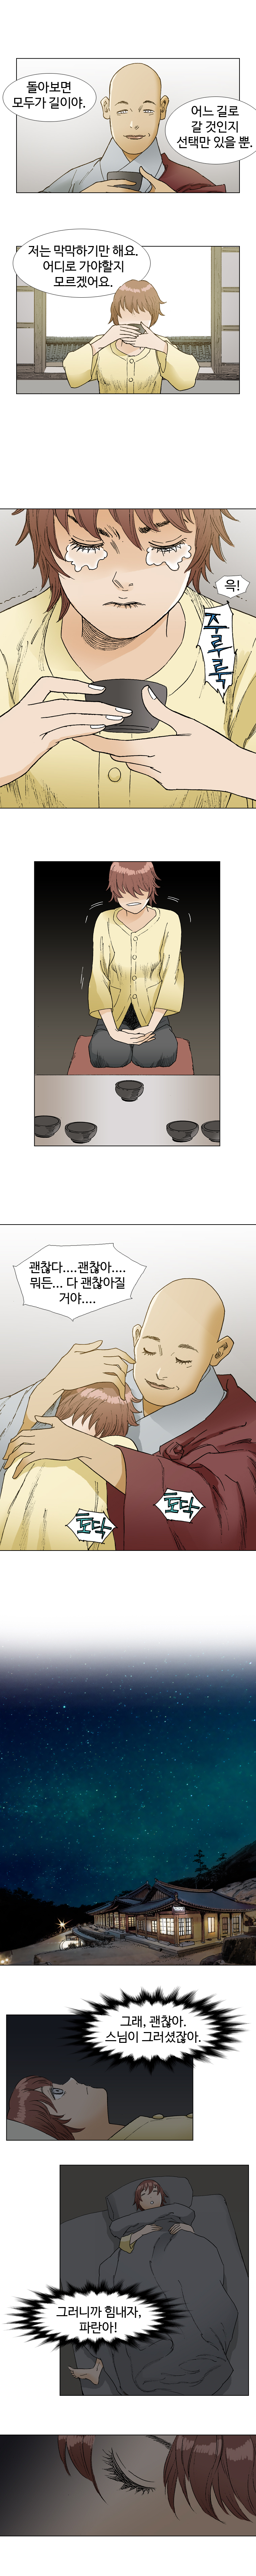 웹툰 백초월 2화-13